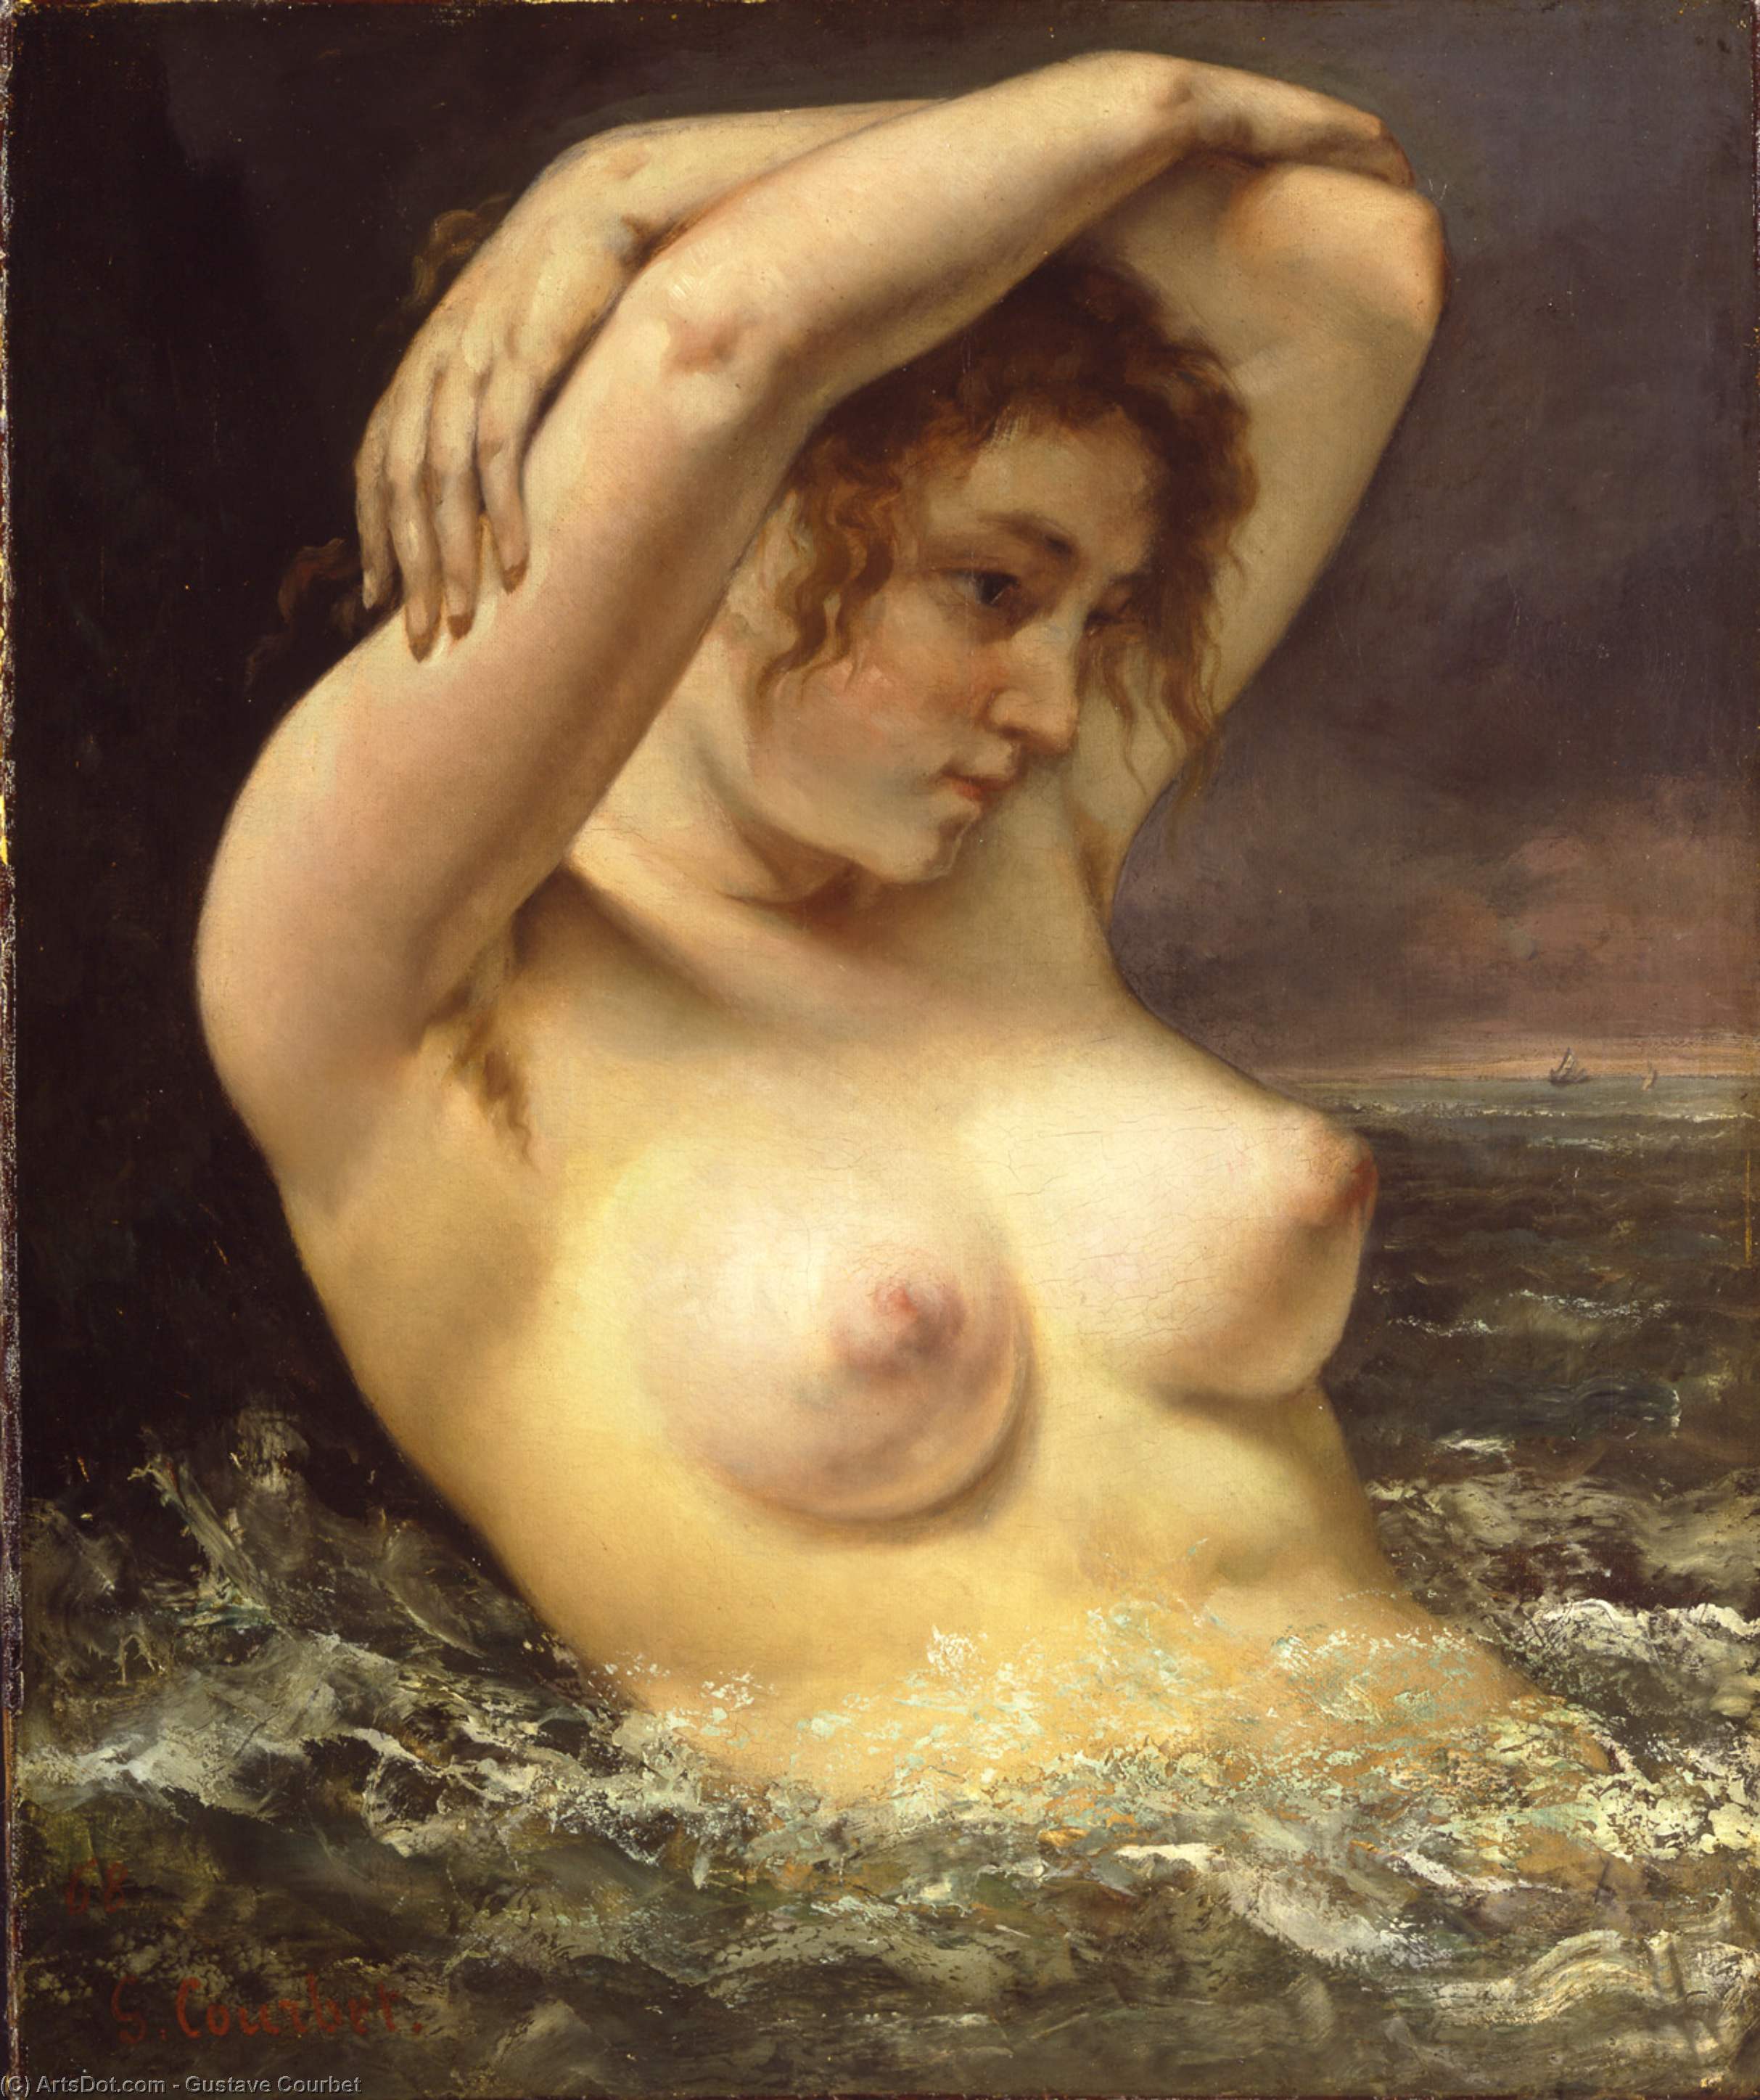 WikiOO.org - אנציקלופדיה לאמנויות יפות - ציור, יצירות אמנות Gustave Courbet - Woman in the Waves